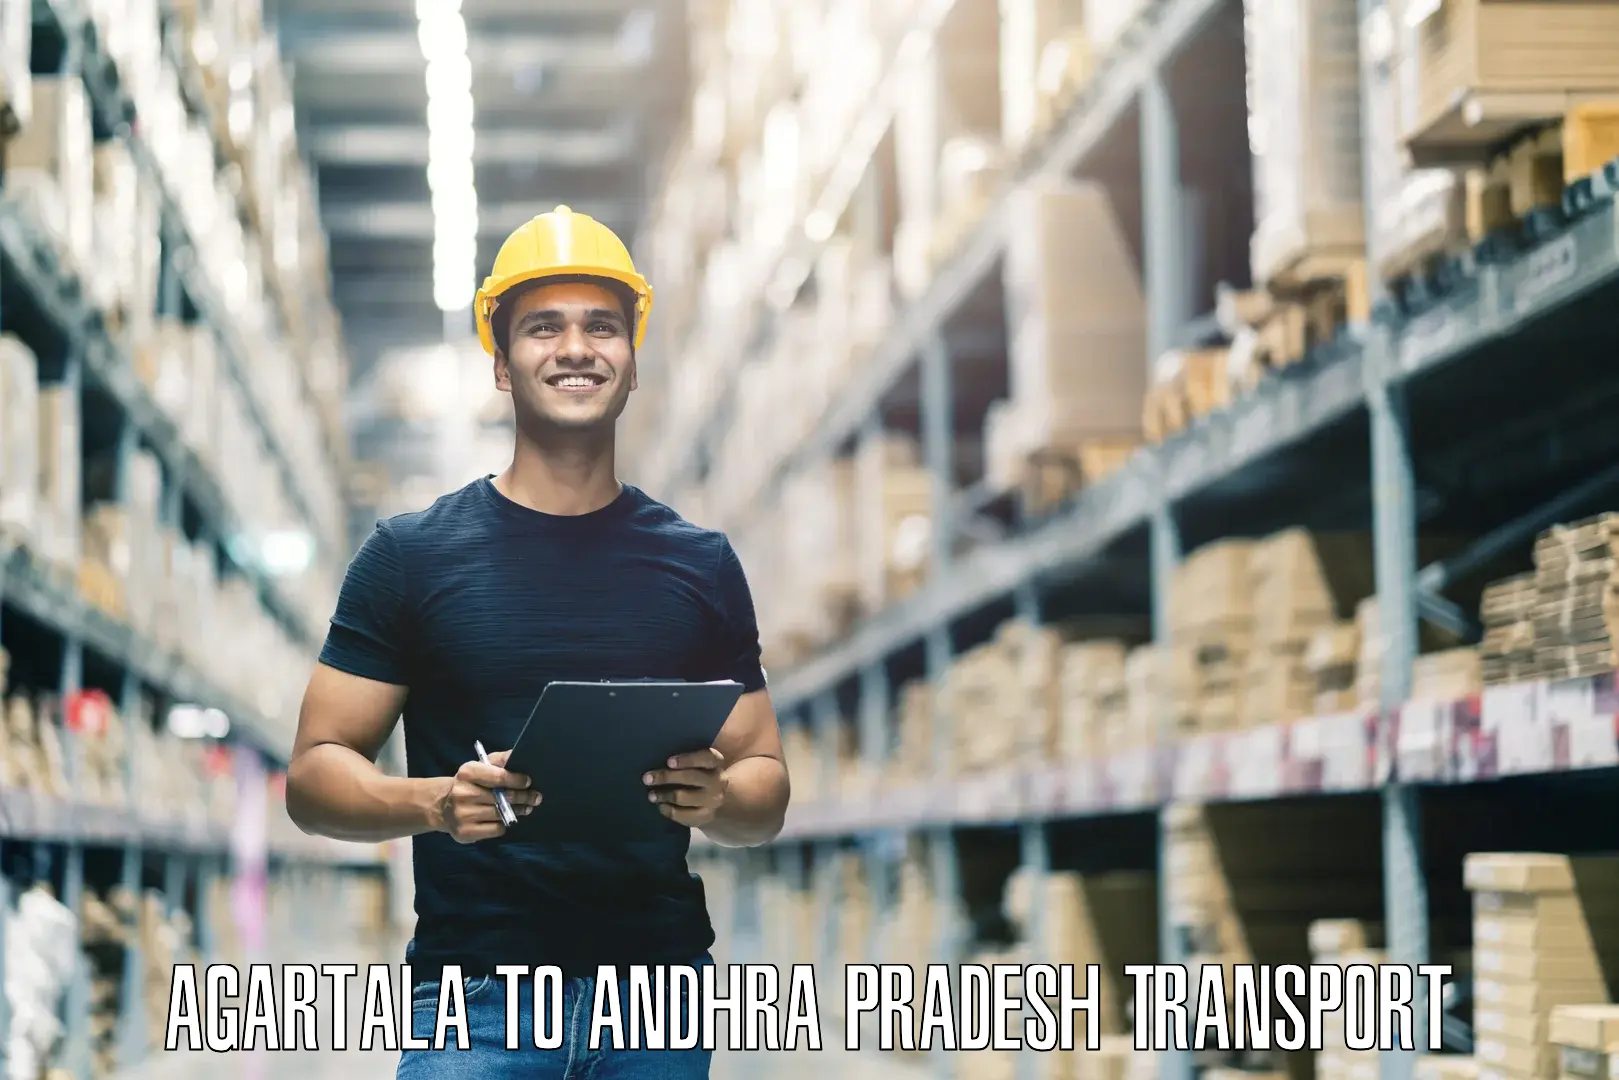 Shipping partner Agartala to Tirupati